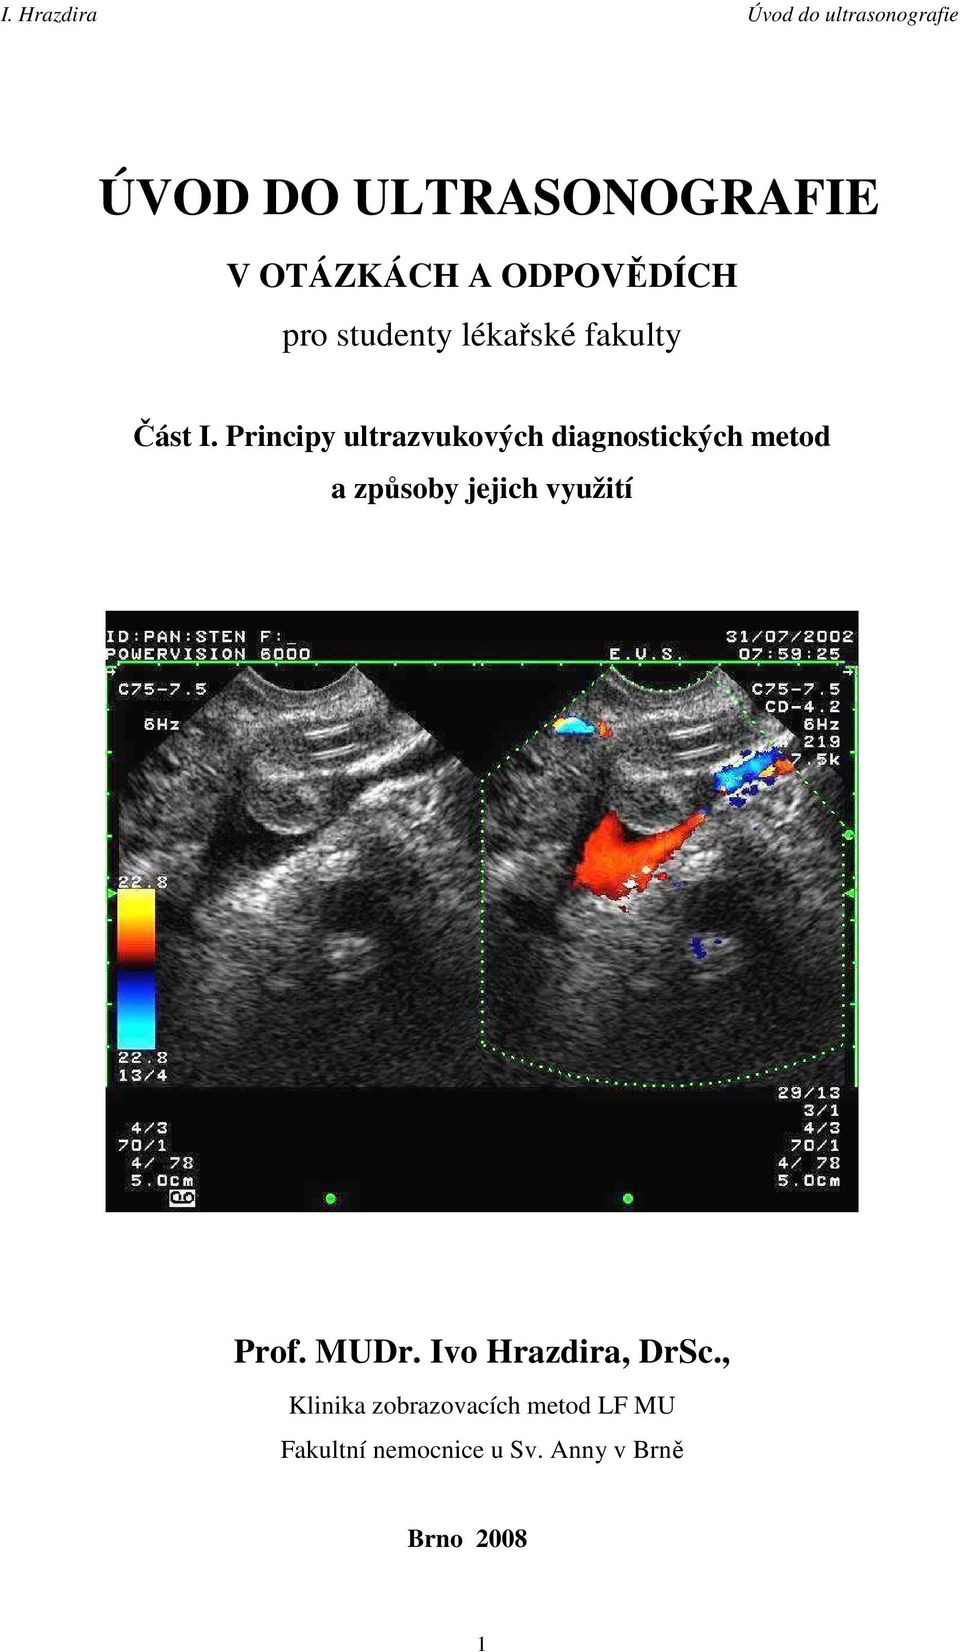 Principy ultrazvukových diagnostických metod a způsoby jejich